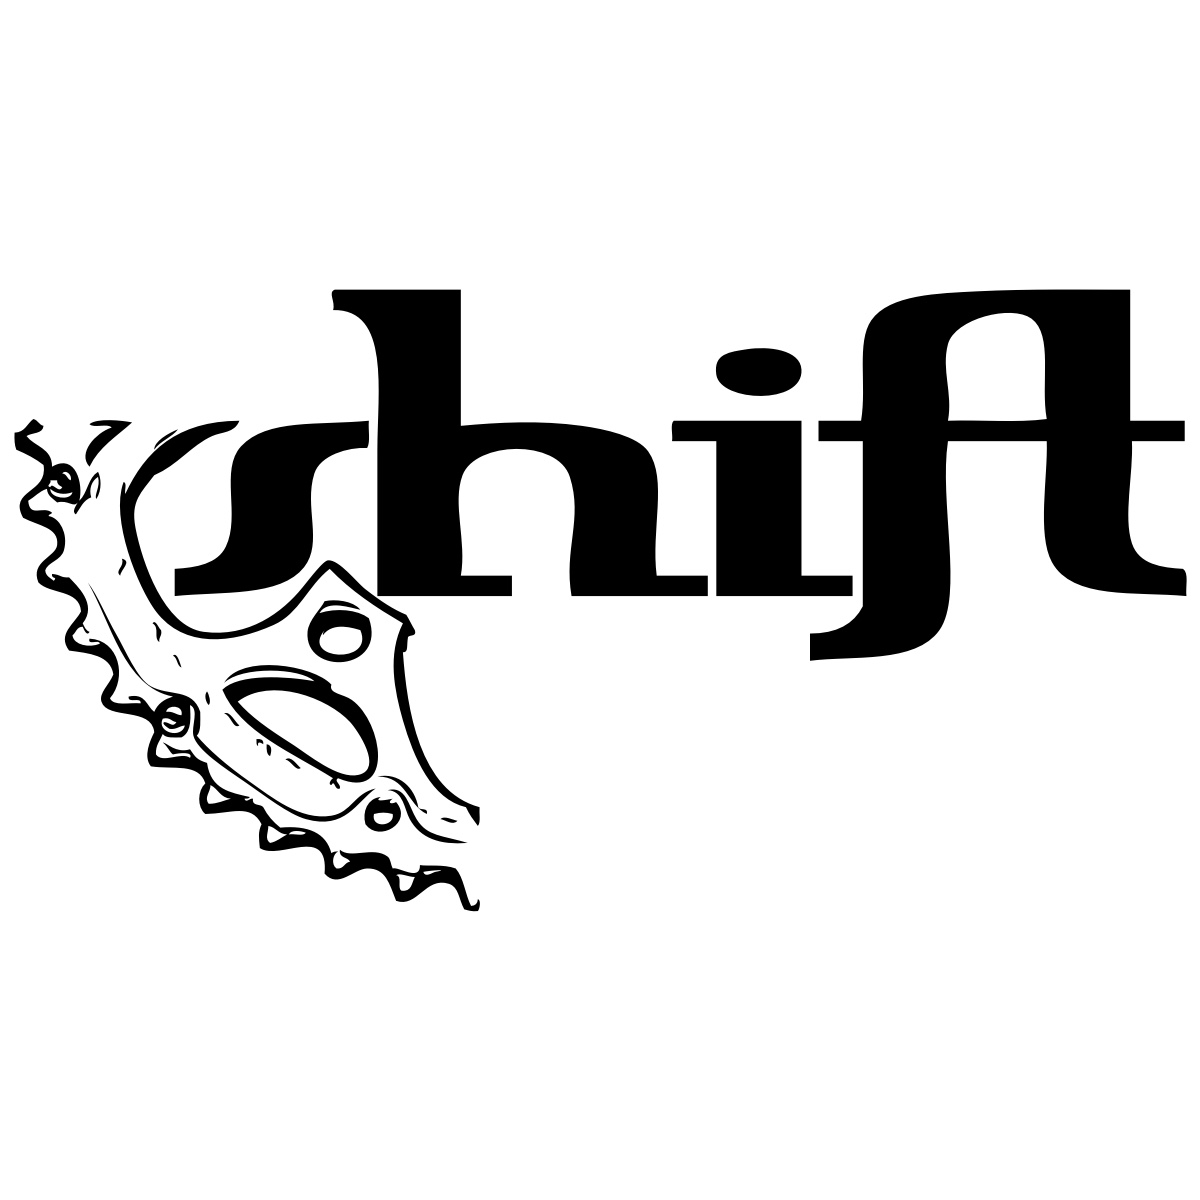 www.shift2bikes.org